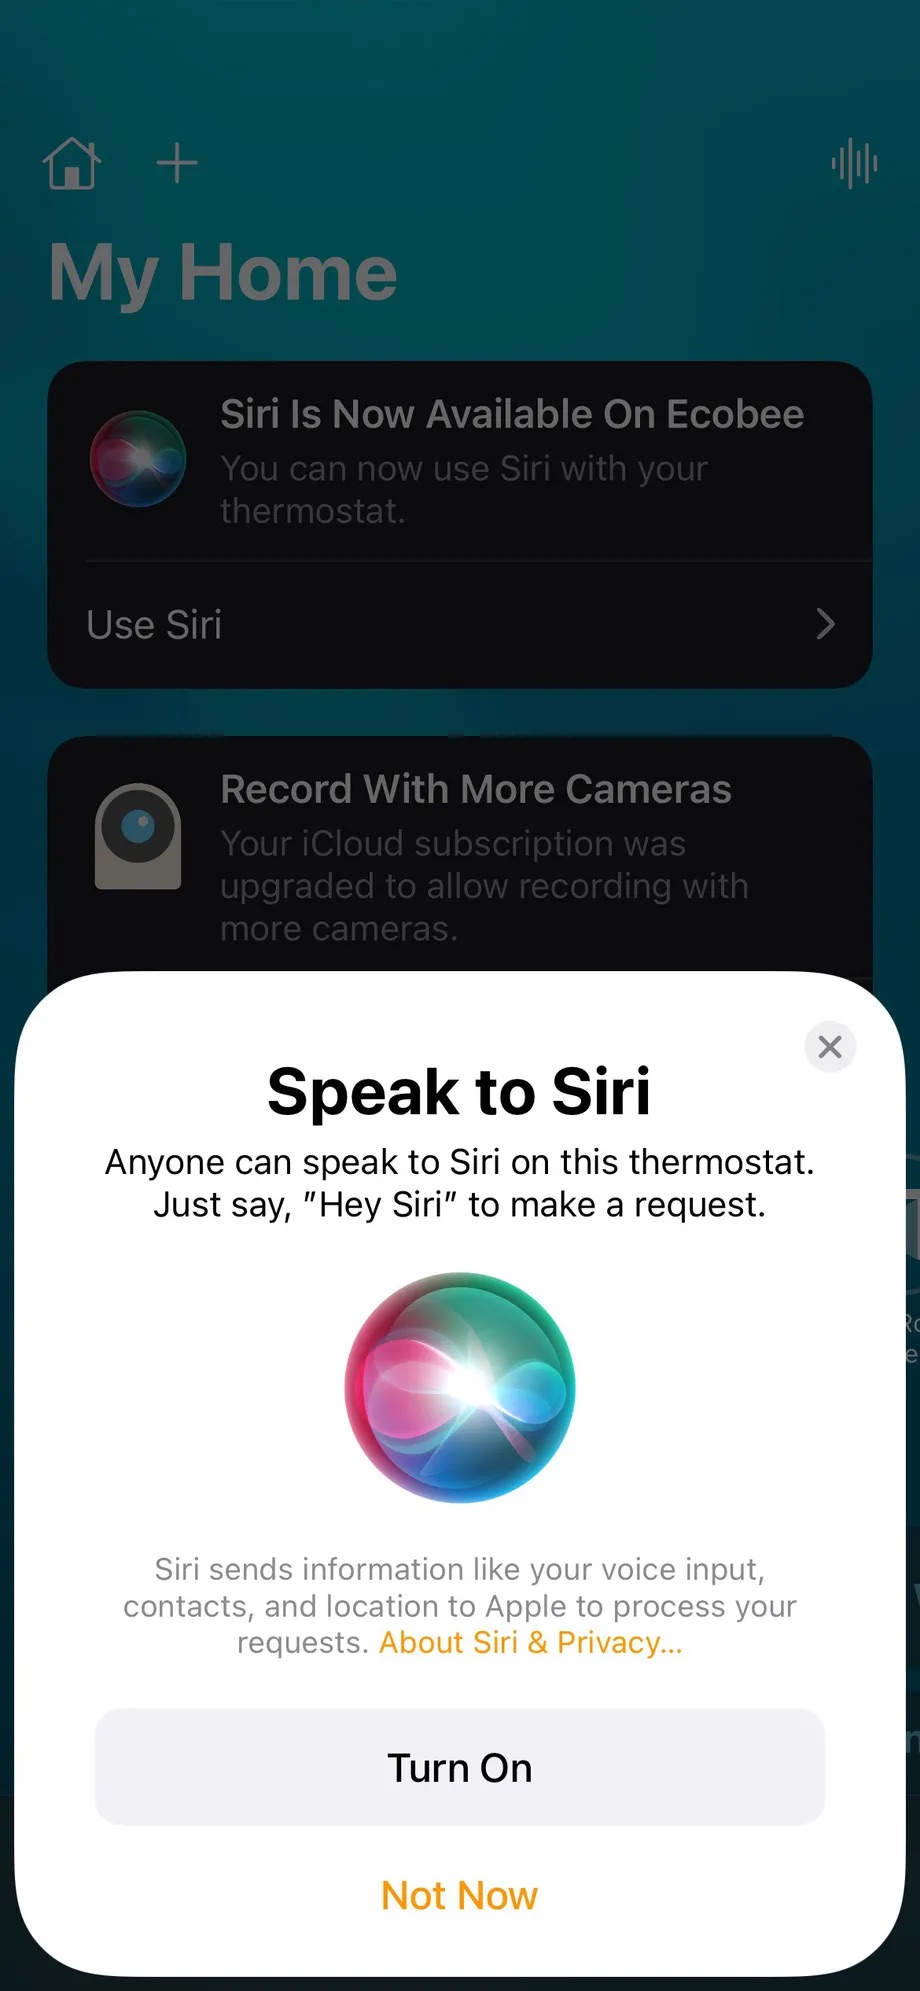 Une capture d'écran iPhone de l'application Home d'Apple montrant un message indiquant que Siri est désormais disponible sur les thermostats intelligents d'Ecobee